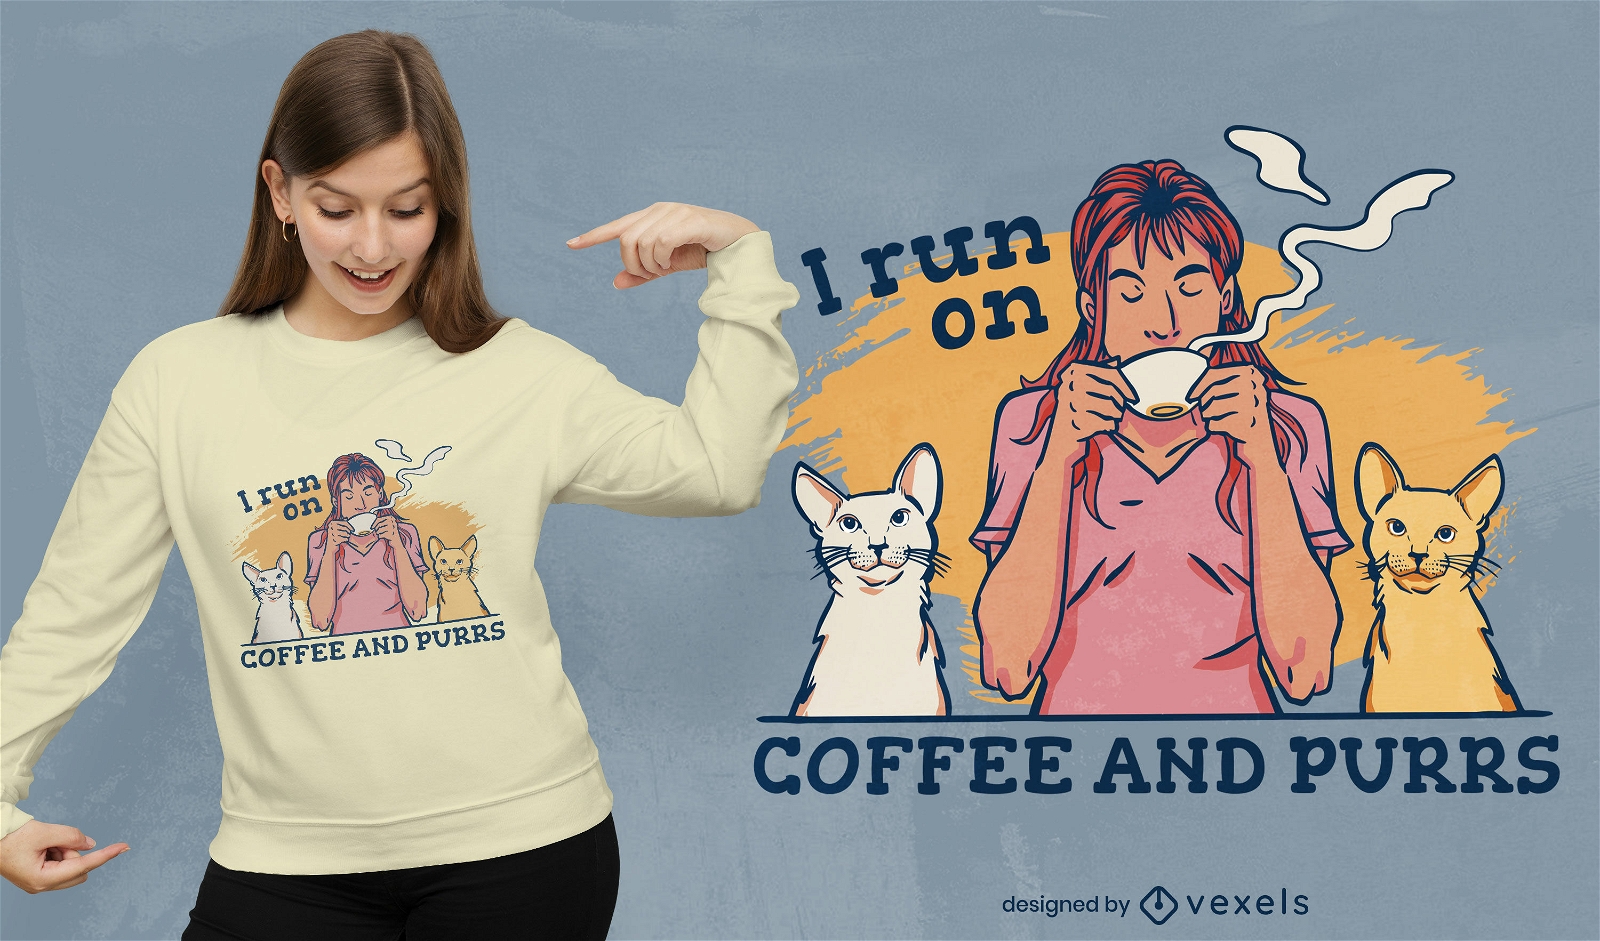 Caf? legal e gatos ronronantes design de t-shirt